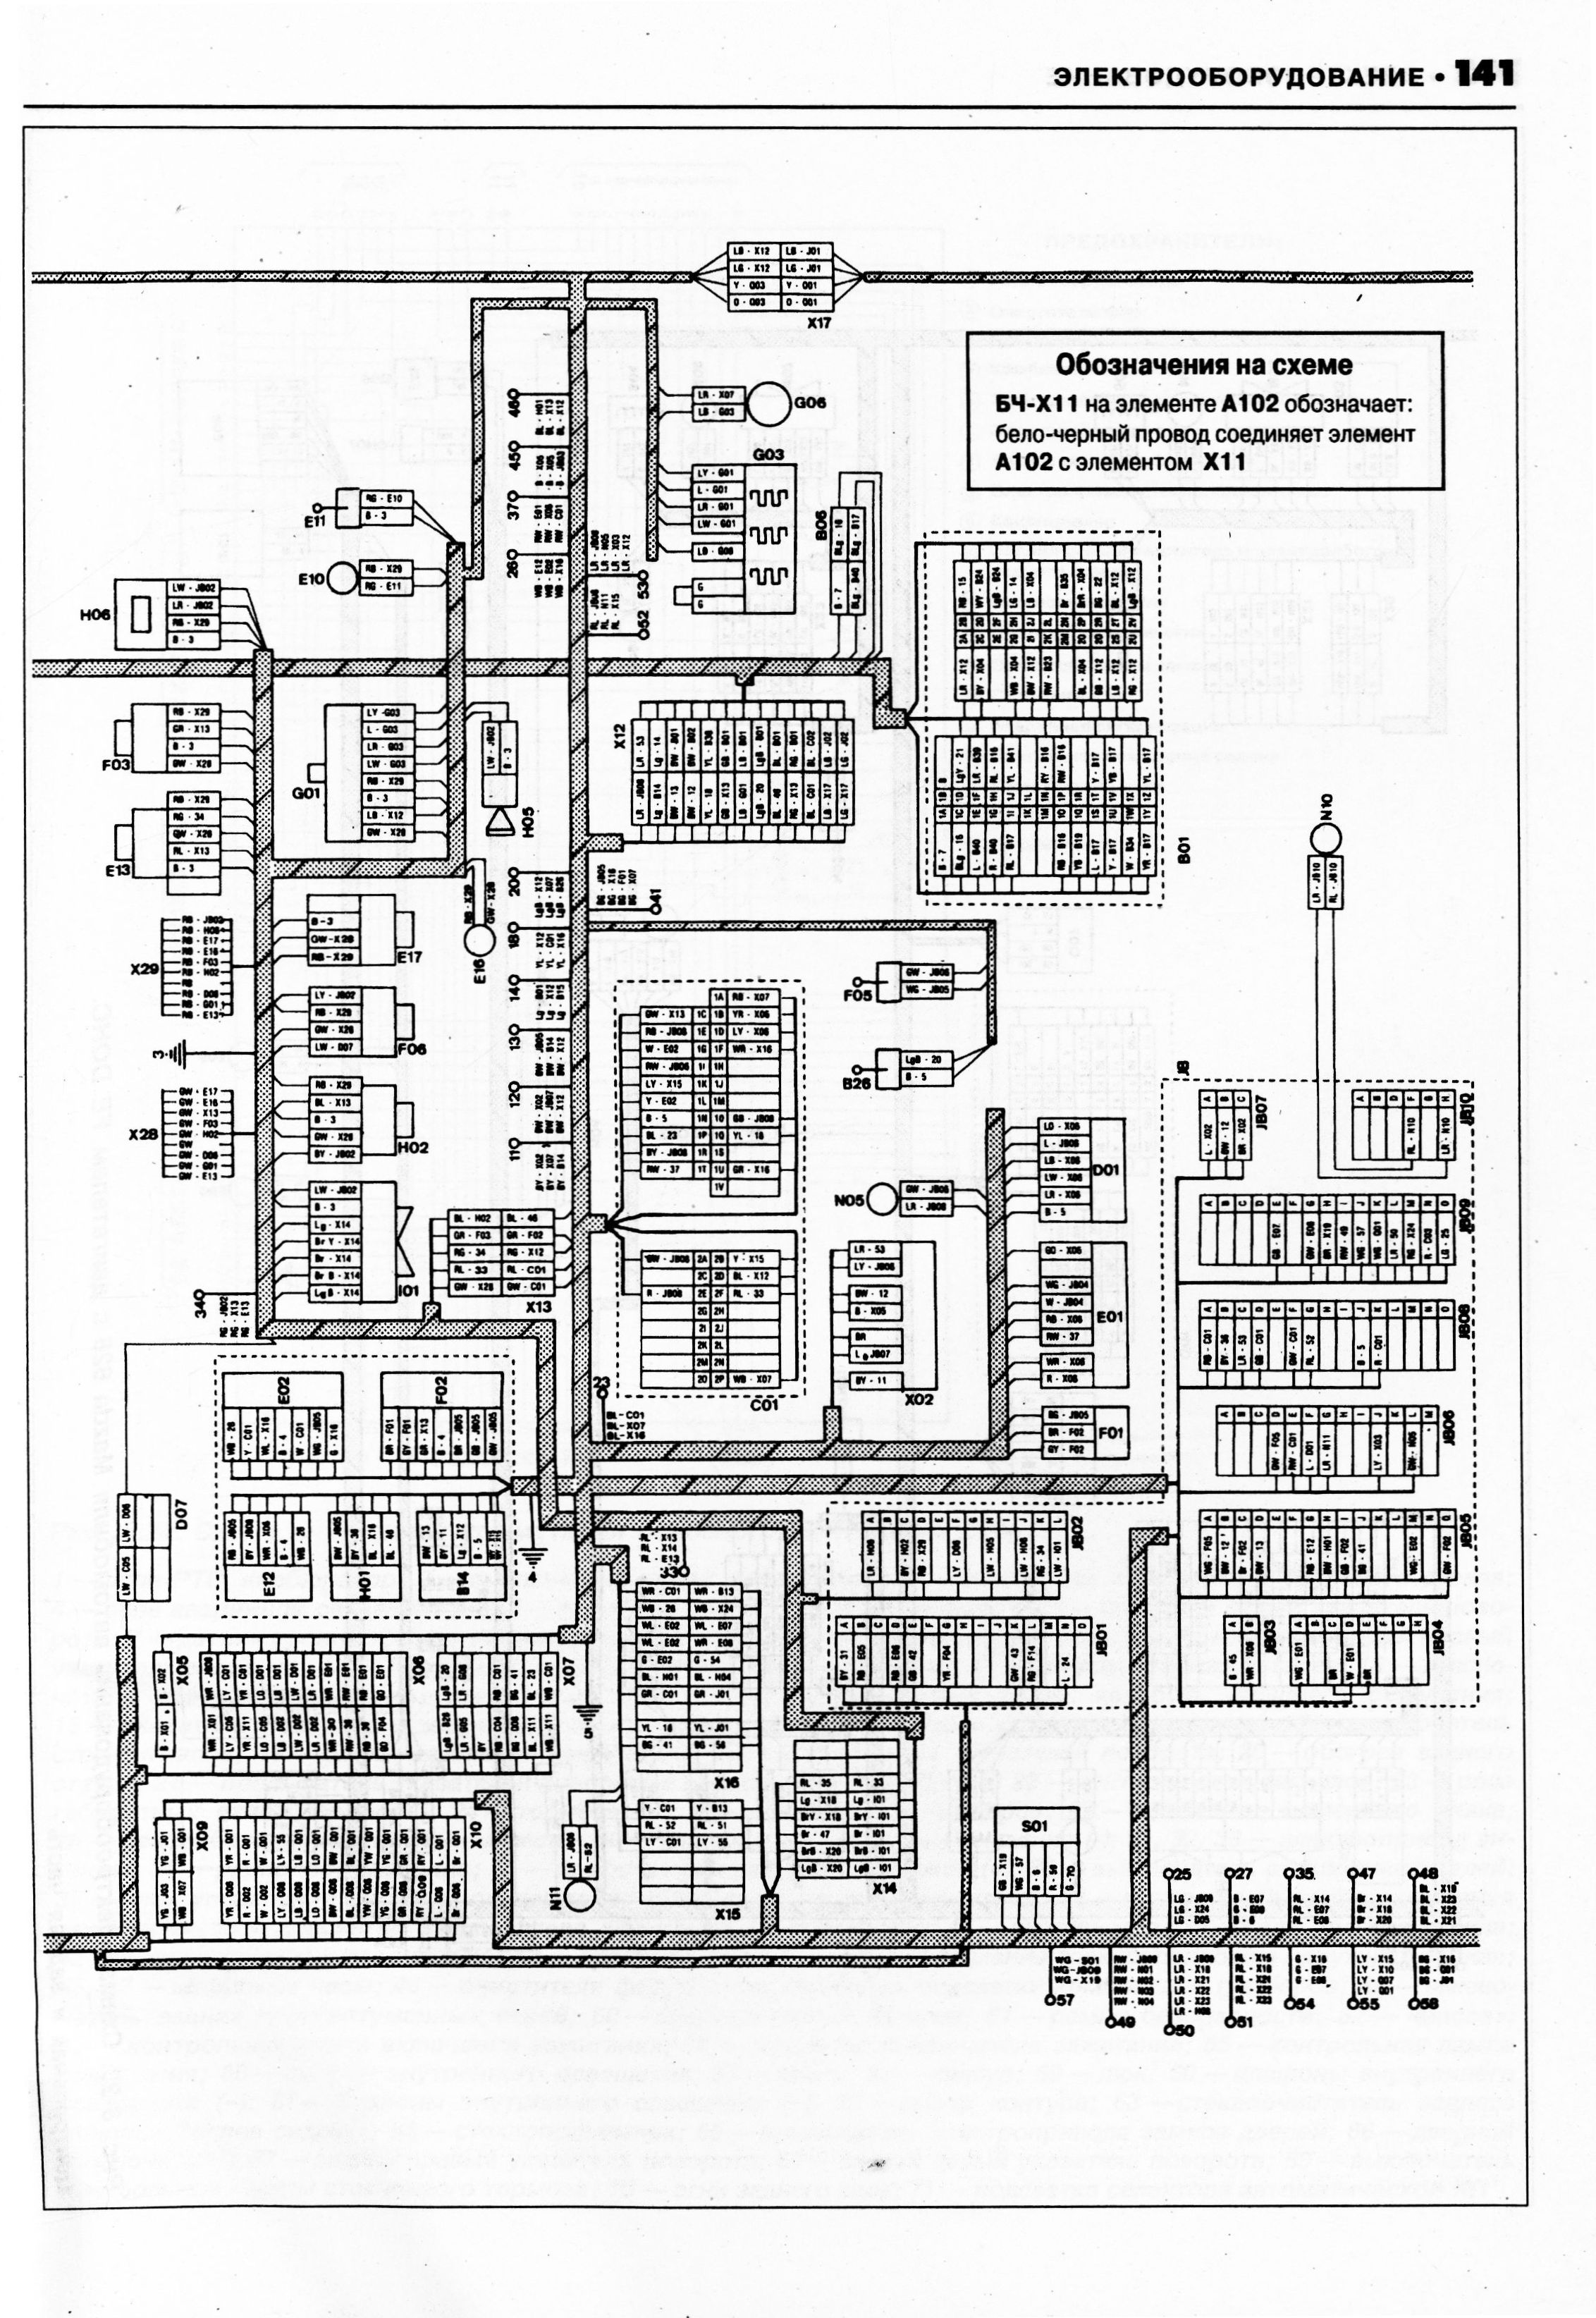 Электрические схемы мазда. Электрическая схема Мазда 626gd 1987-1991. Схема проводки Mazda 626 ge. Электрическая схема Мазда 626 ge 2.0 1991-1997. Мазда 626 схема электрооборудования.